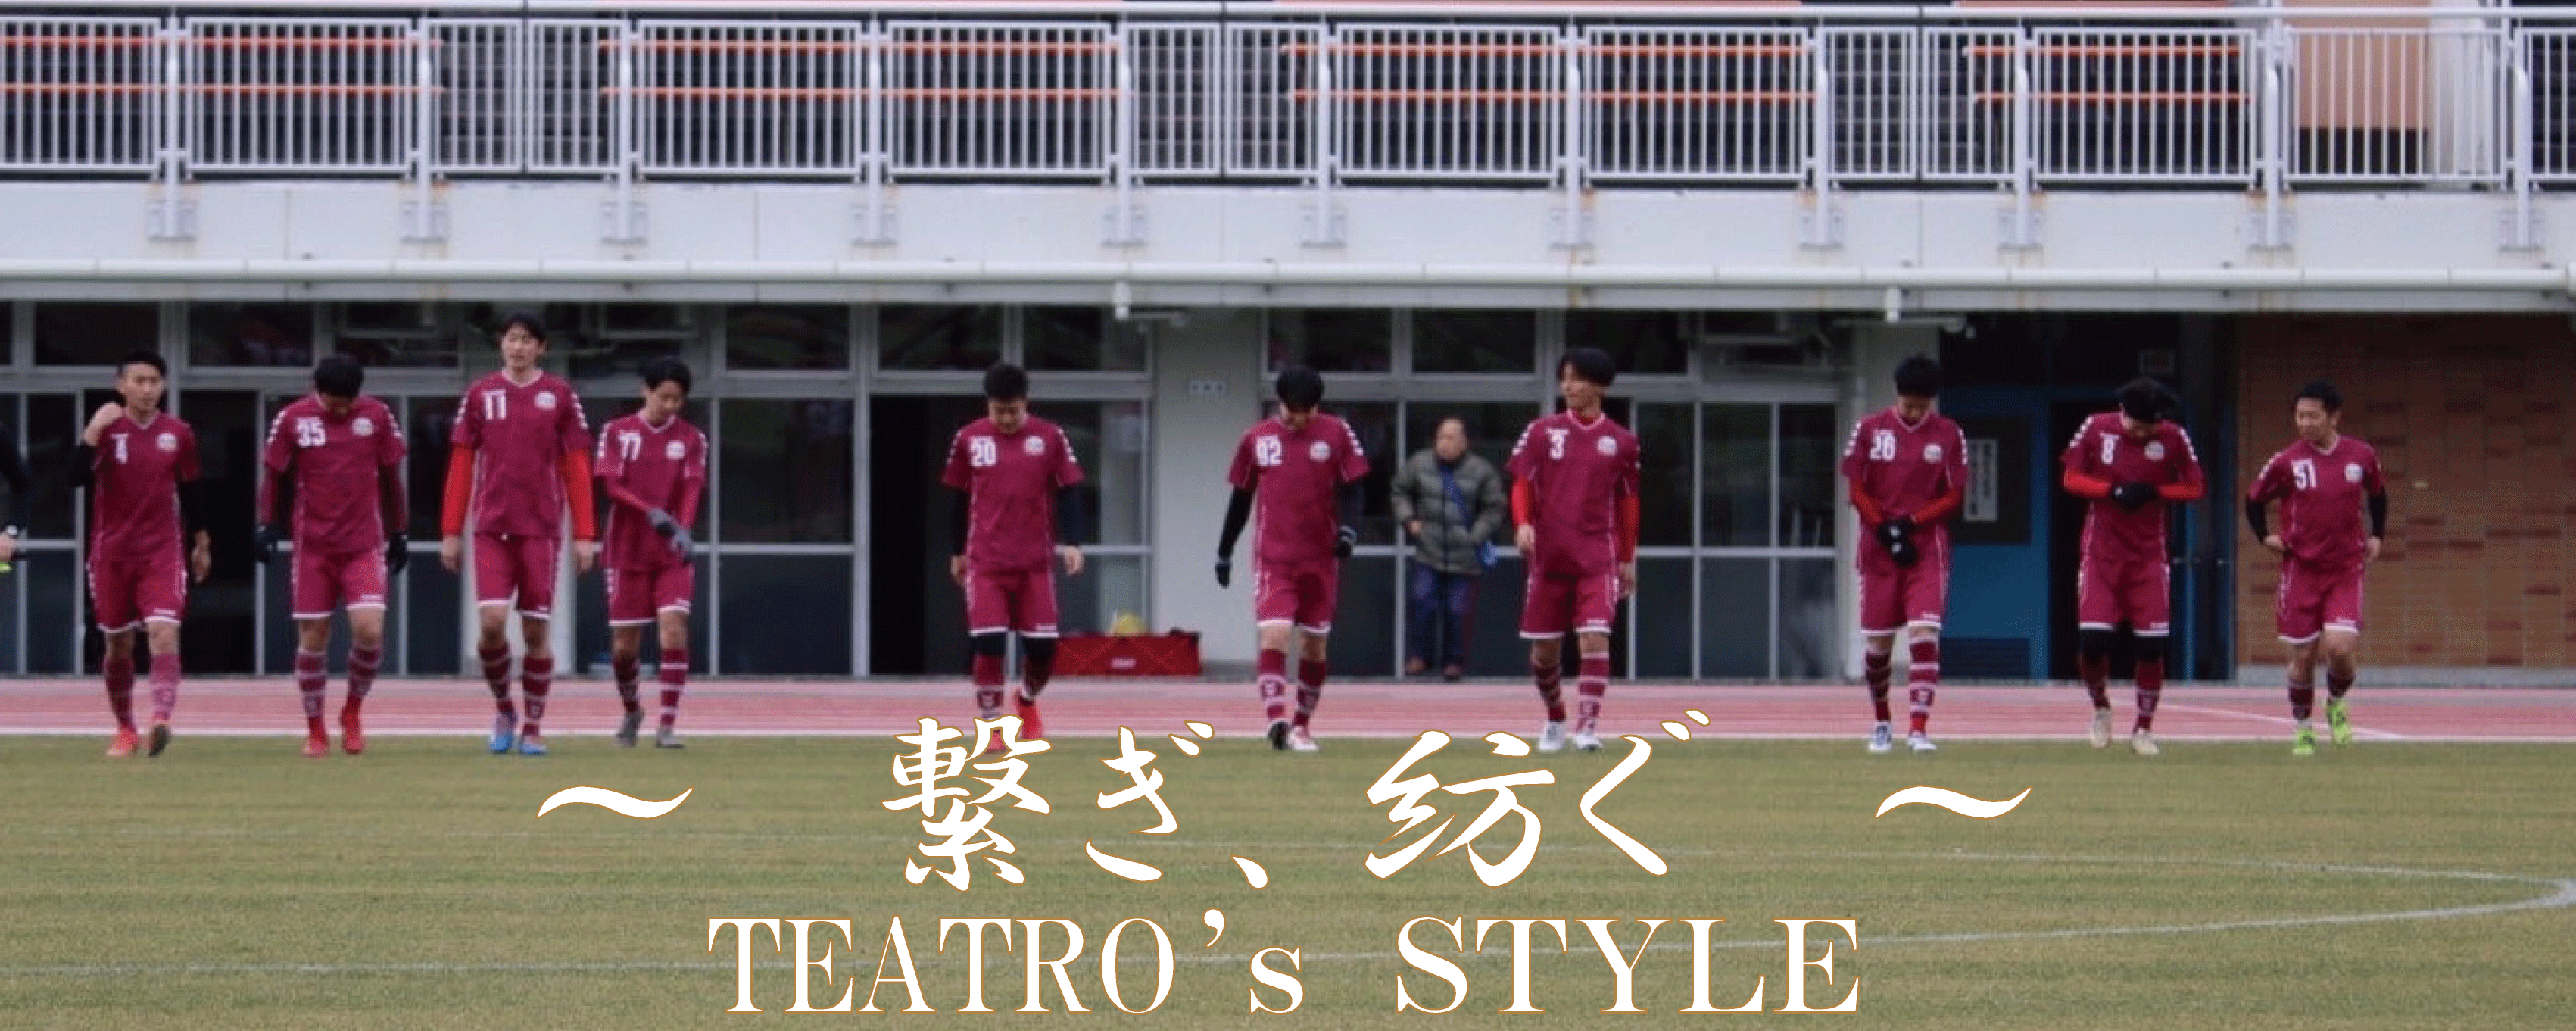 横浜のサッカースクール Club Teatro クラブテアトロ